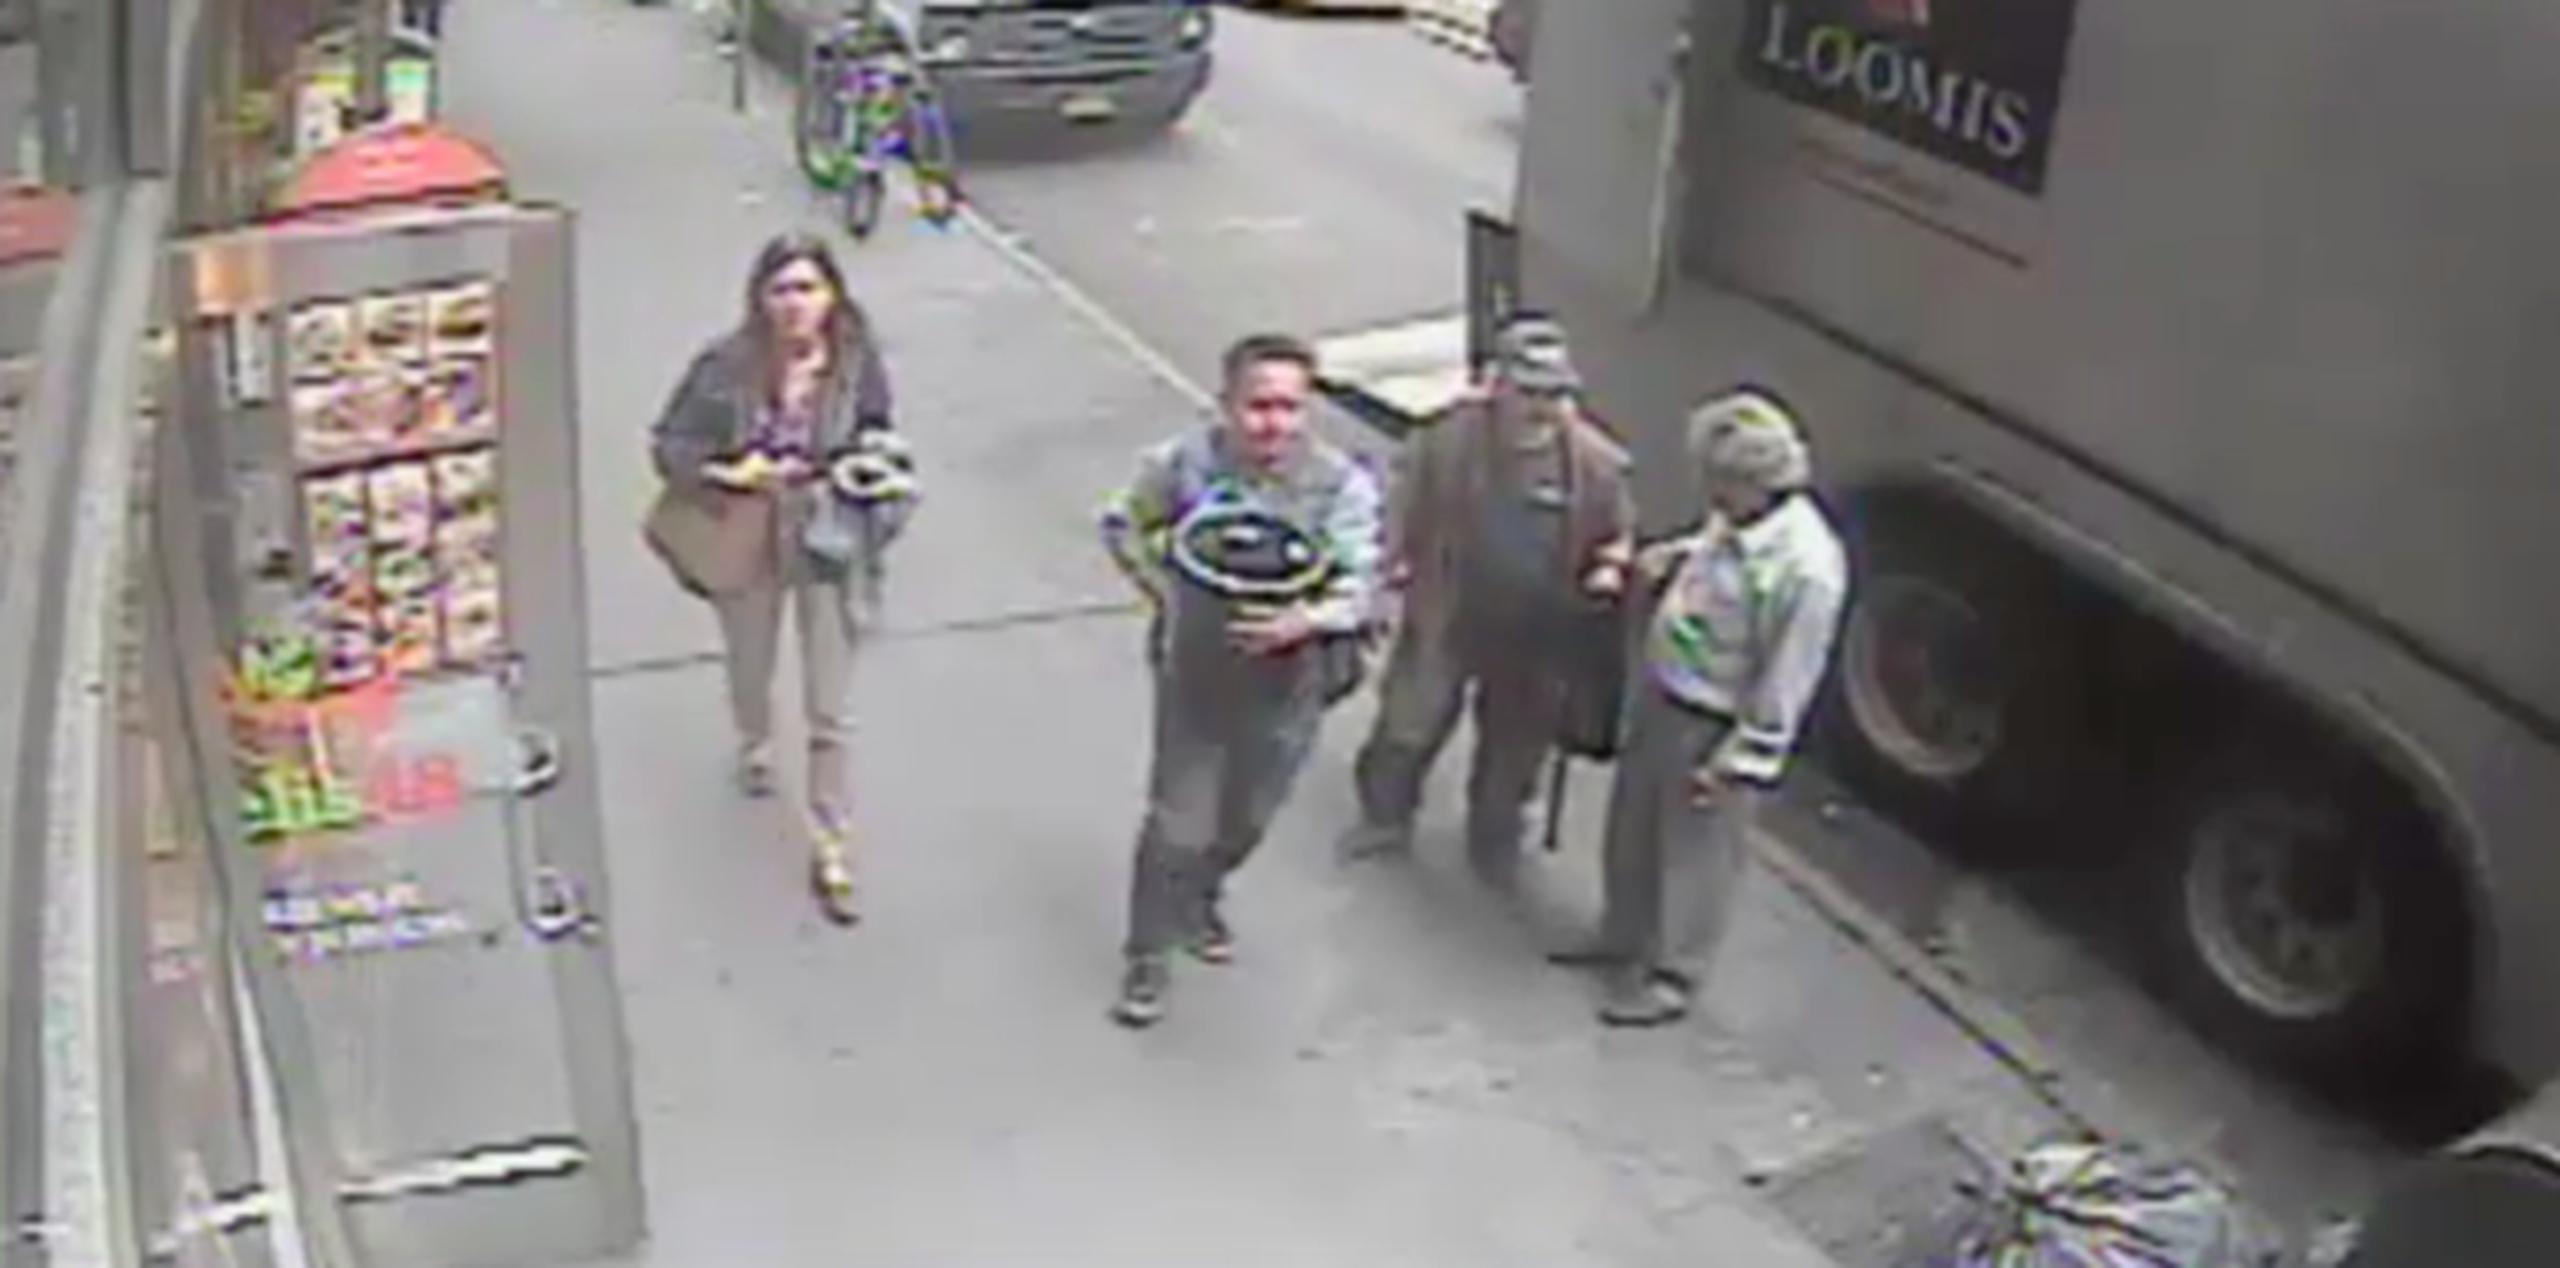 La Policía publicó un vídeo de vigilancia del hombre con la esperanza de dar con su paradero. (YouTube / Captura)